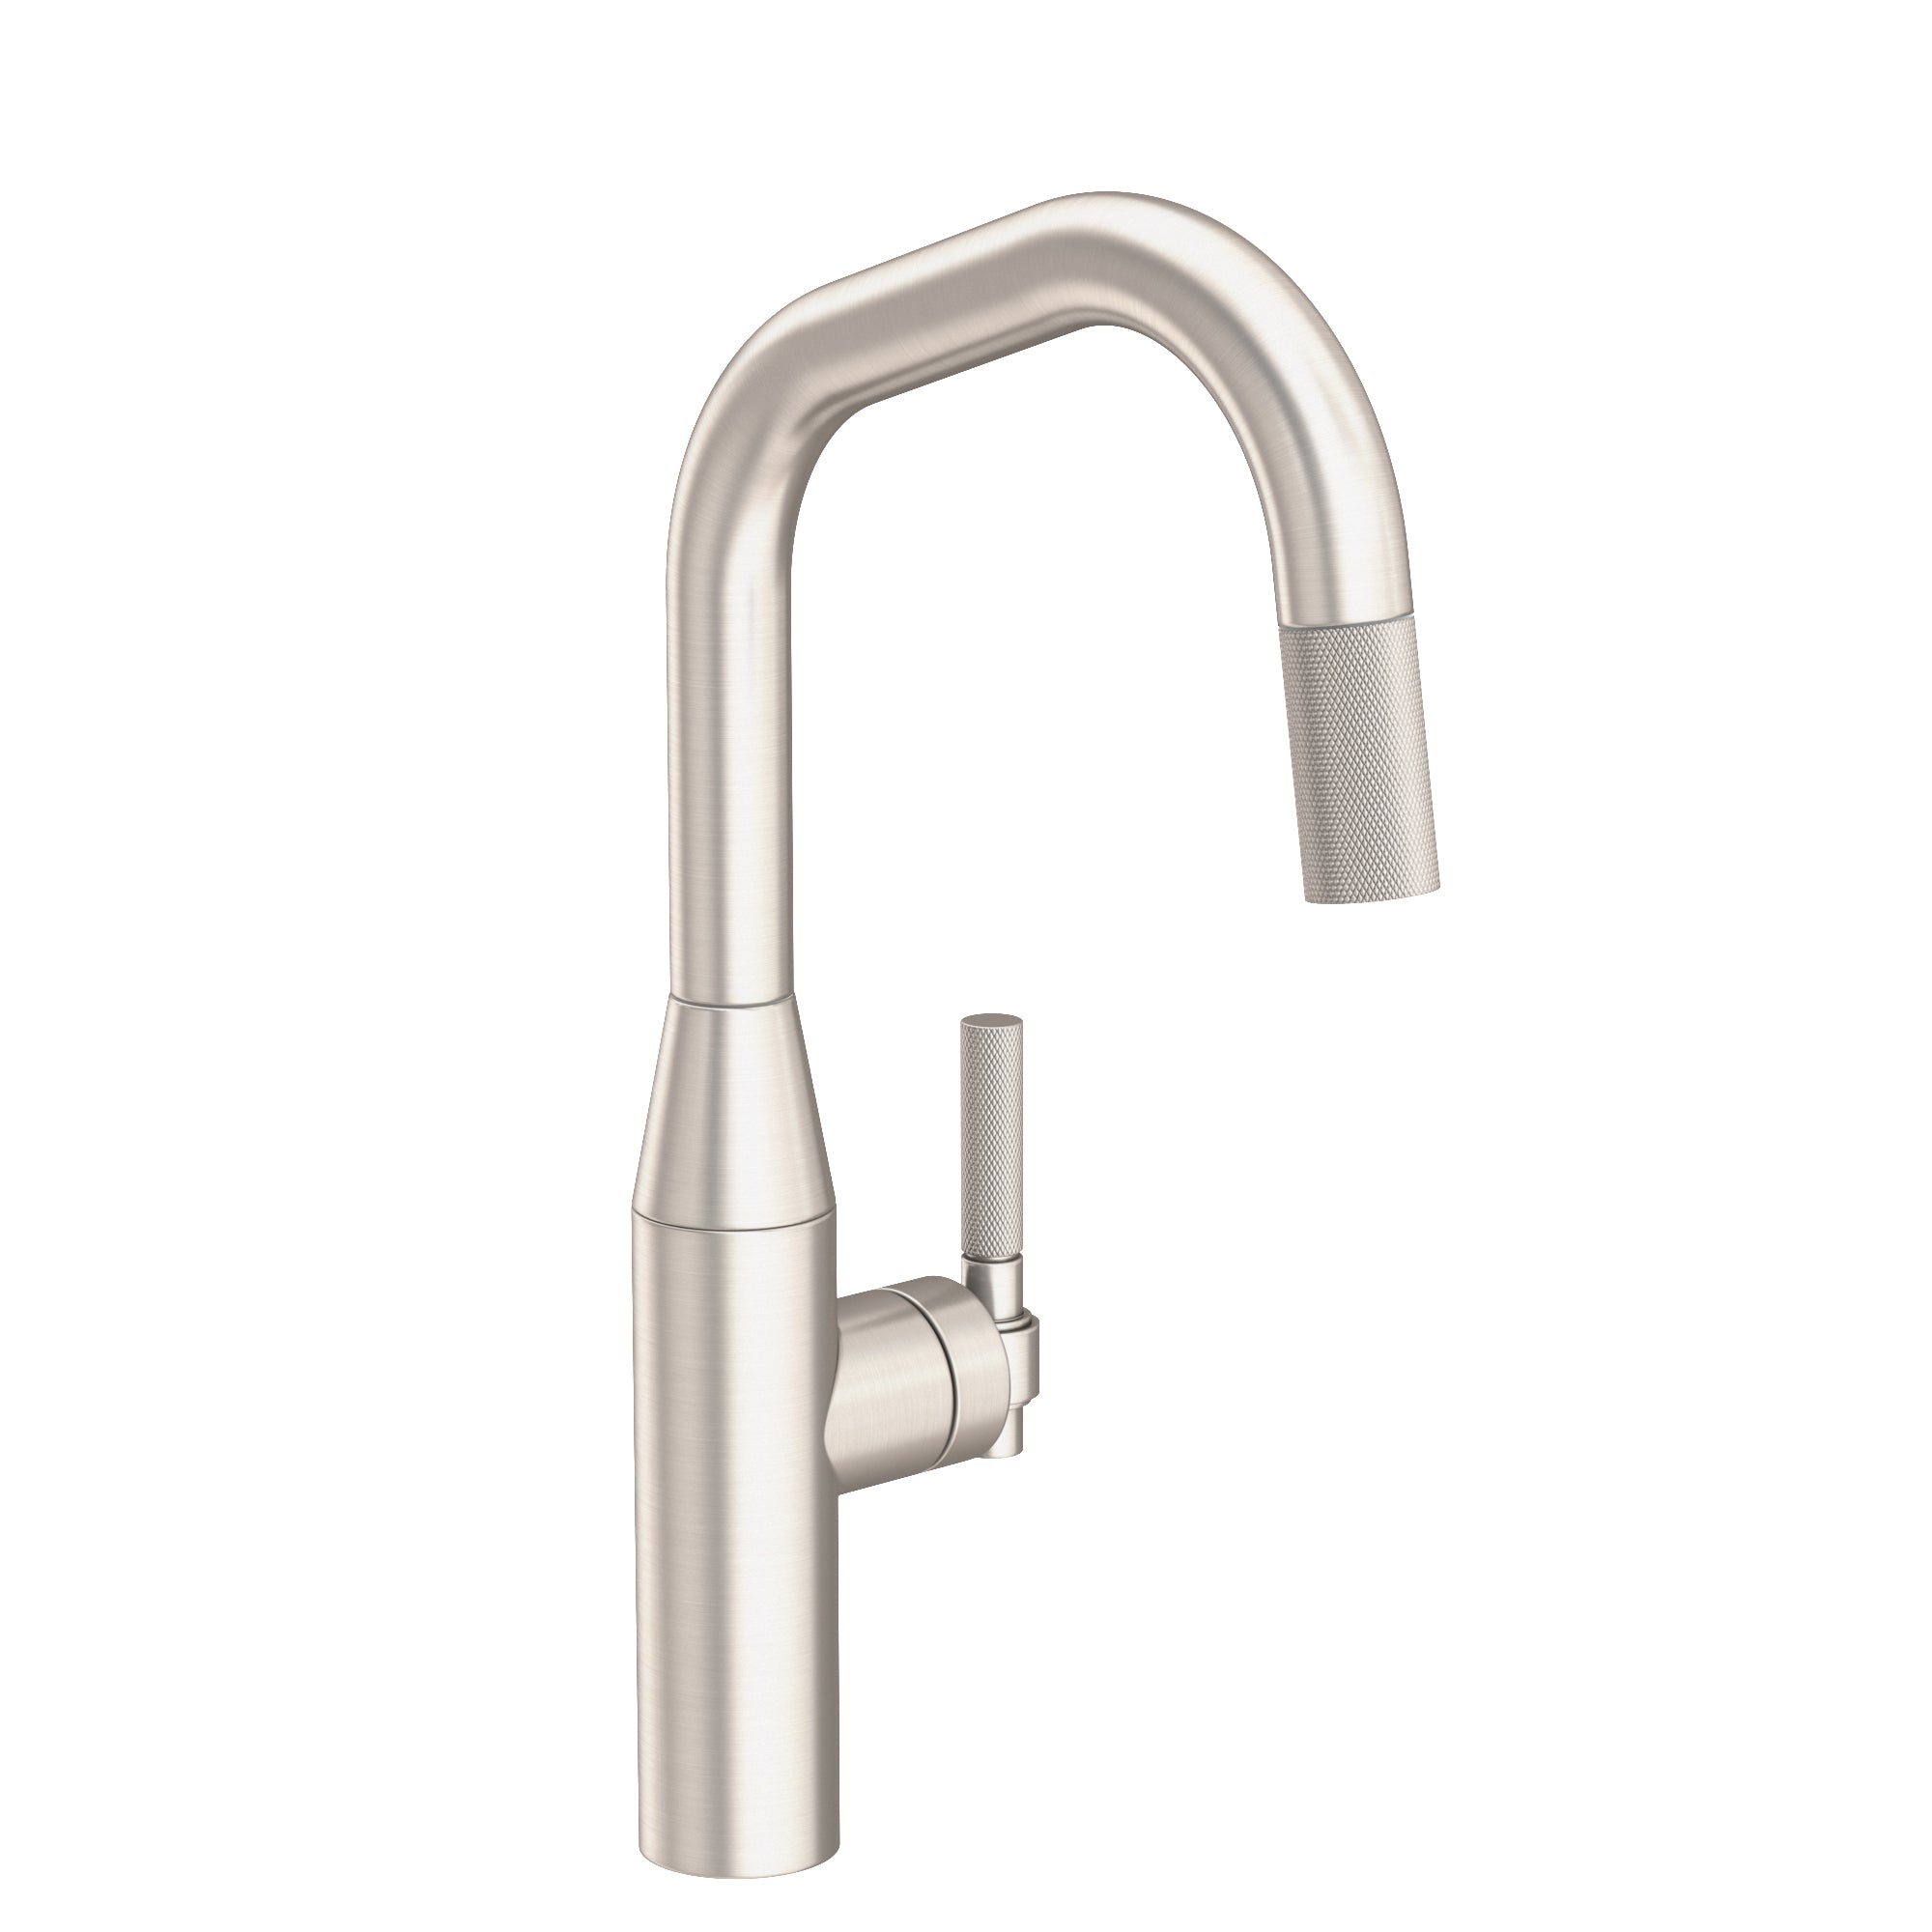 Newport Brass Muncy Pull-down Kitchen Faucet